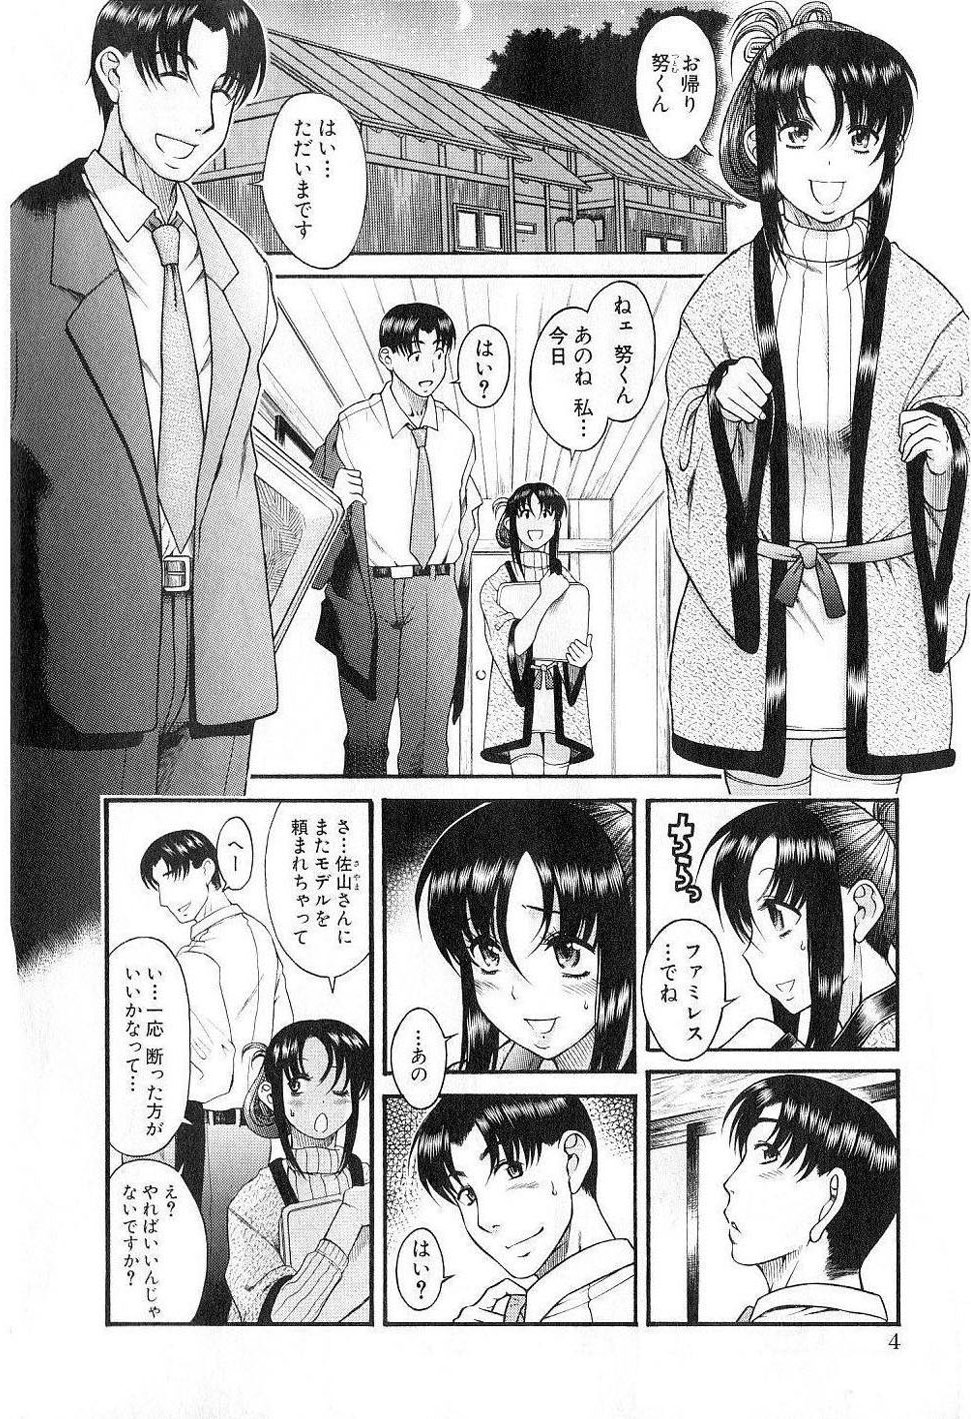 [Amazume Ryuta] Toshiue no hito vol 6 [RAW] - single page version 